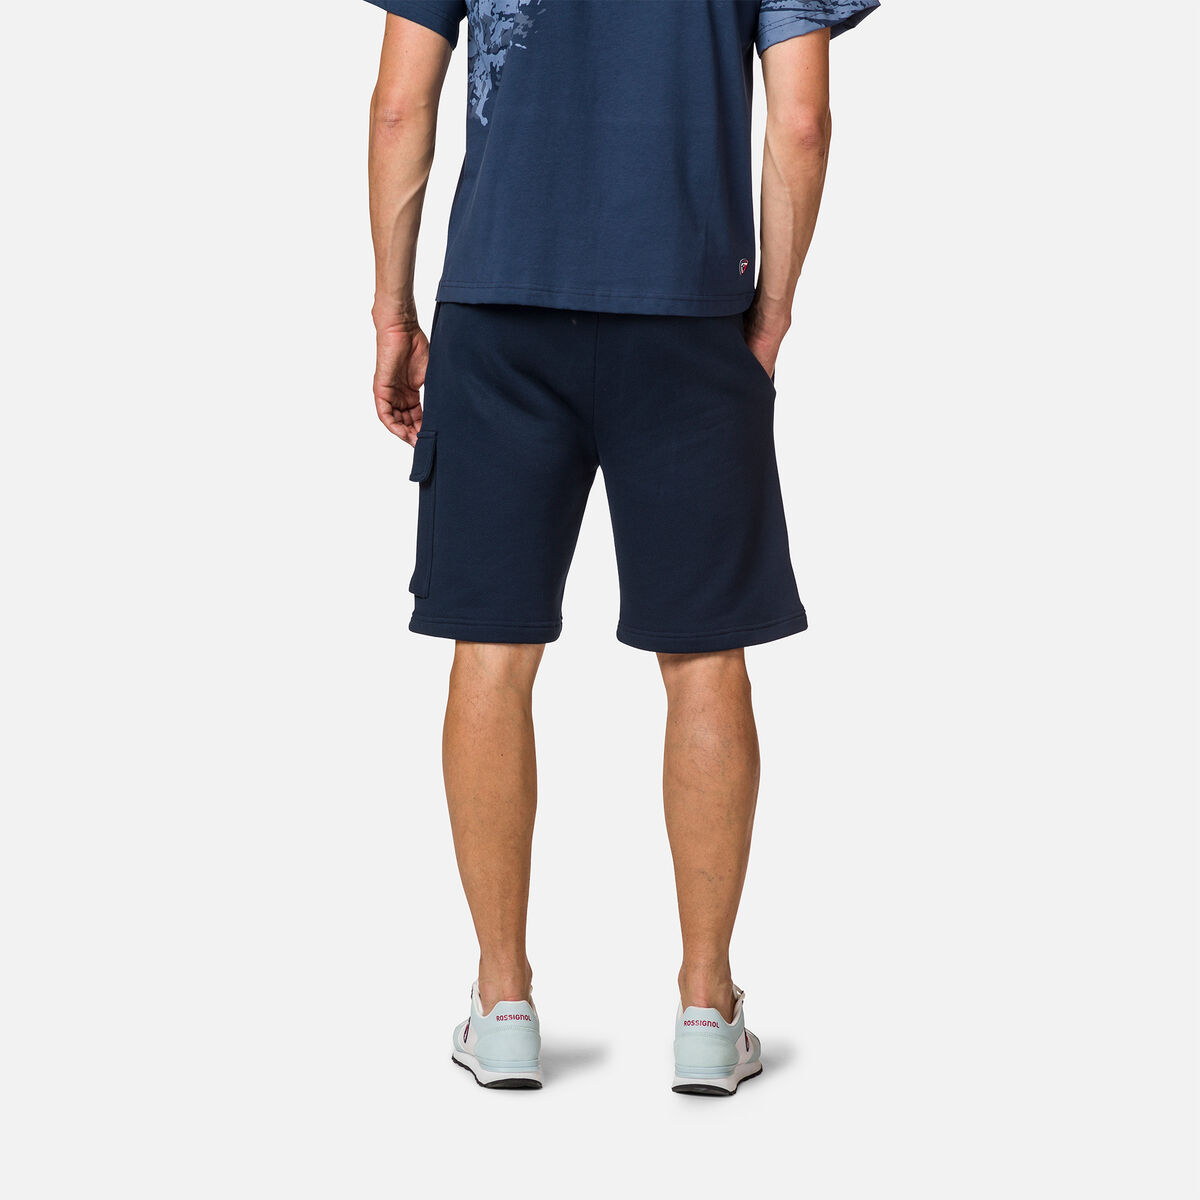 Men's cotton comfortable Shorts